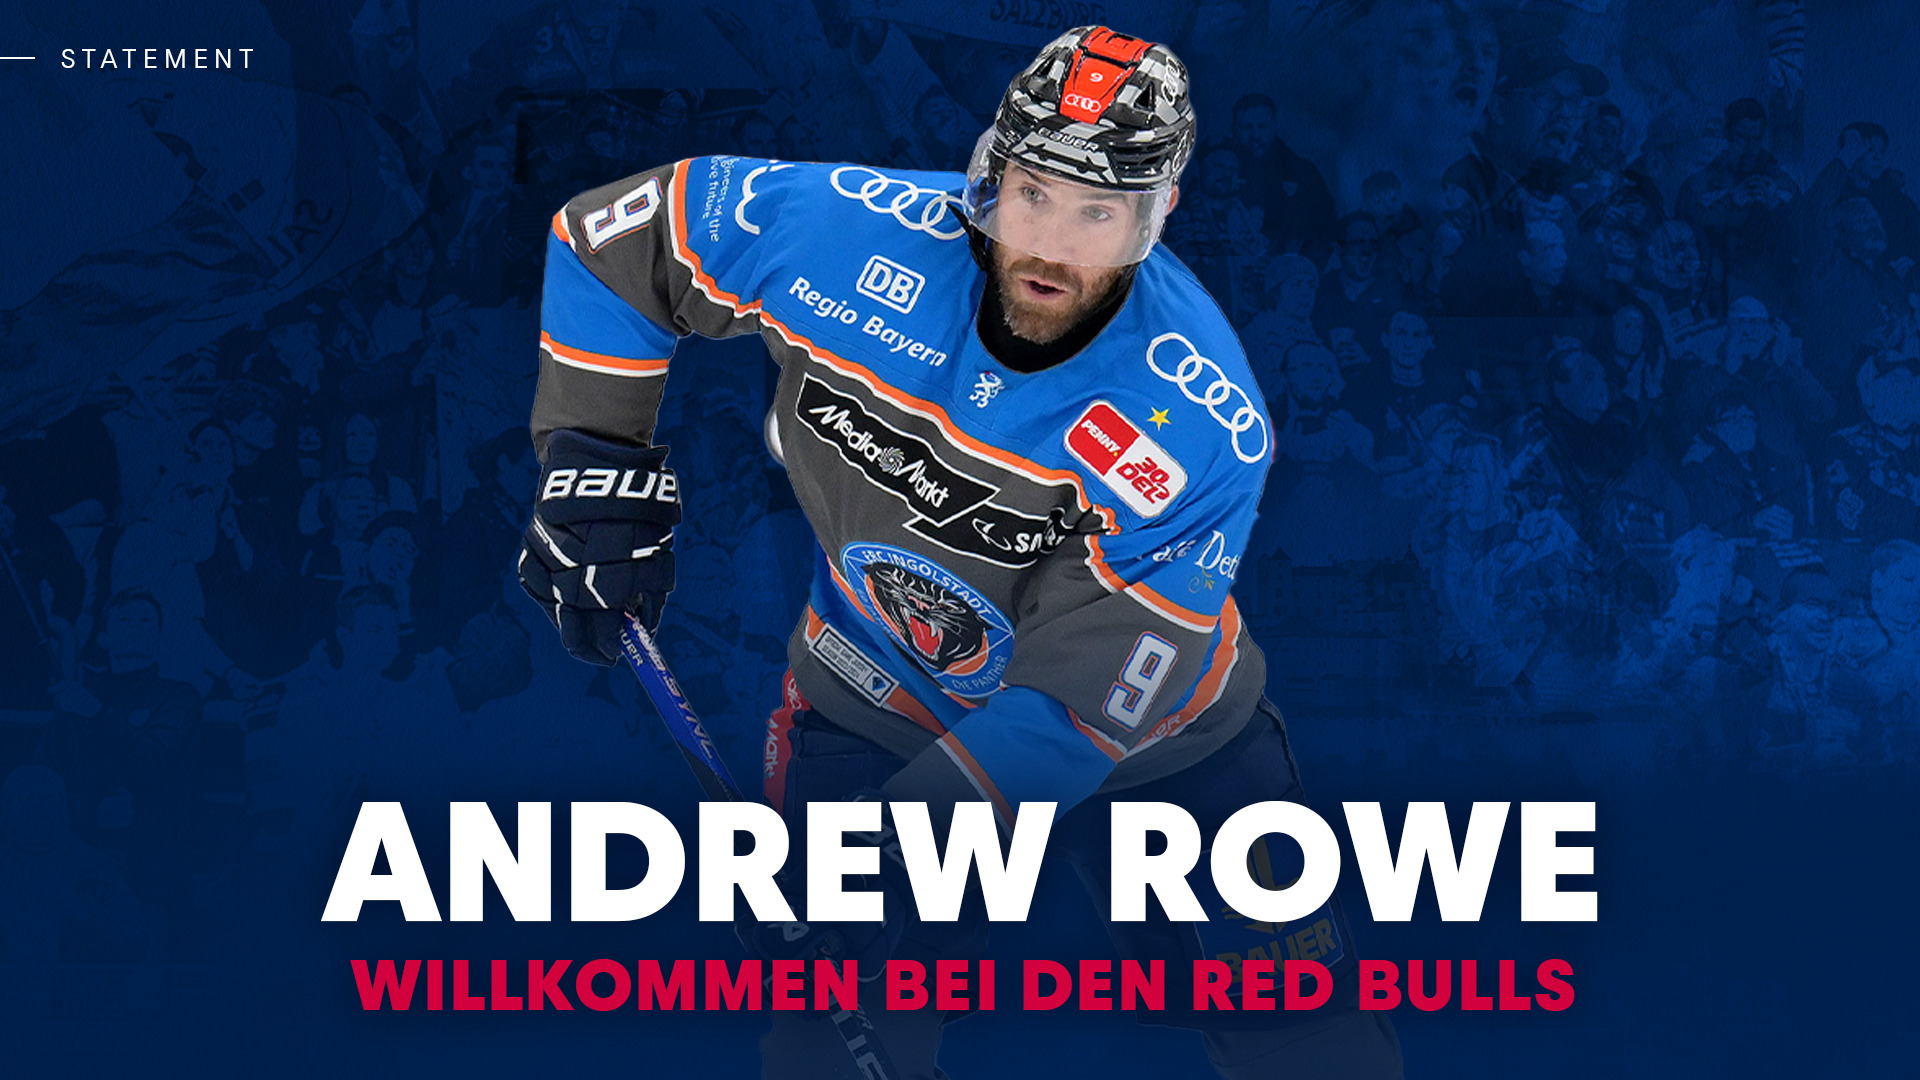 Willkommen Andrew Rowe!